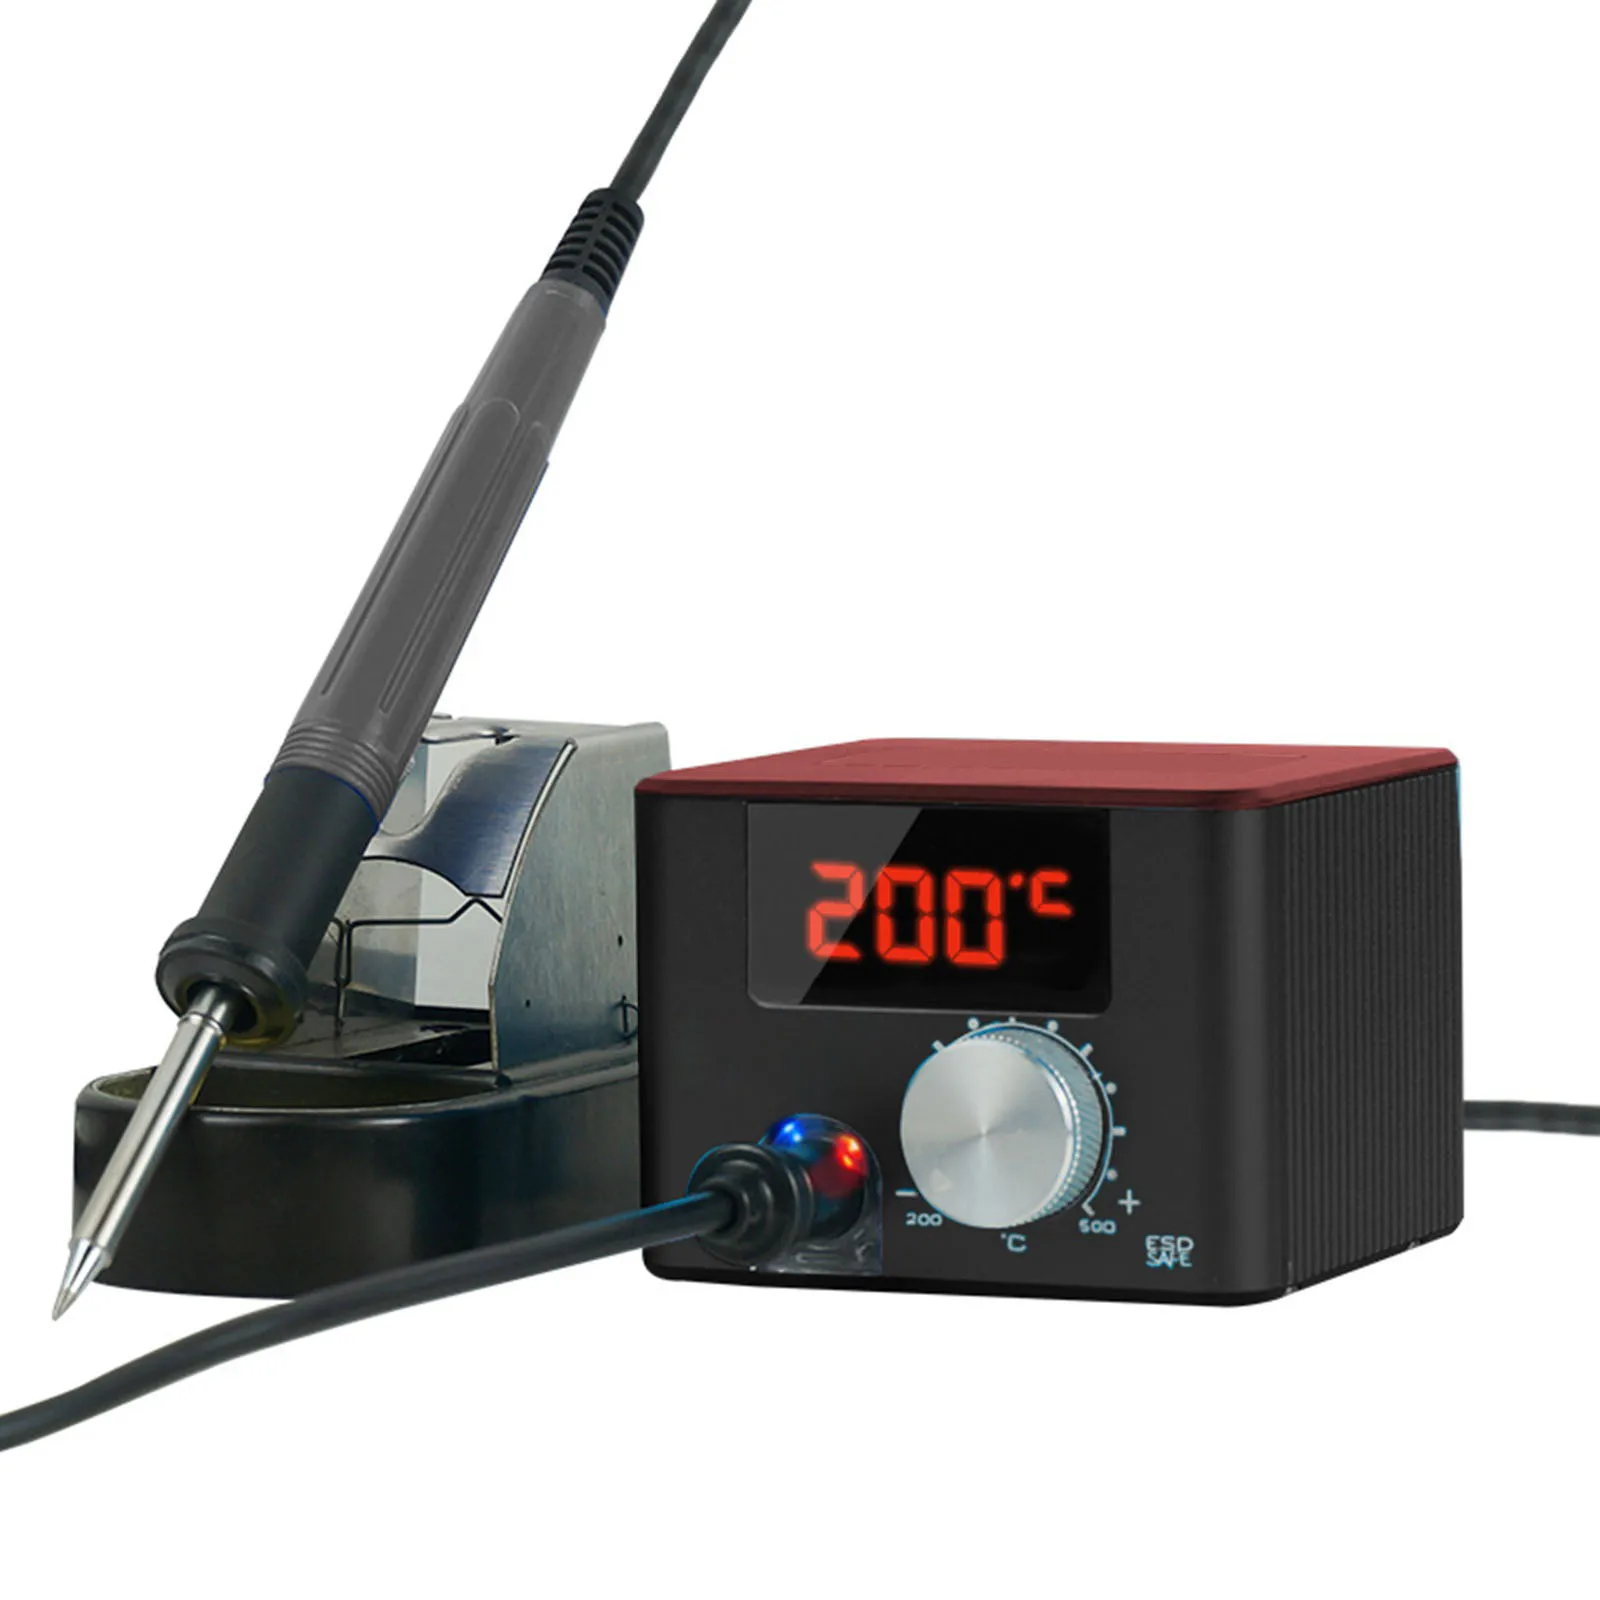 

950T Pro Портативная паяльная станция T12 75 Вт Антистатическая постоянная температура регулируемый сварочный инструмент паяльные станции